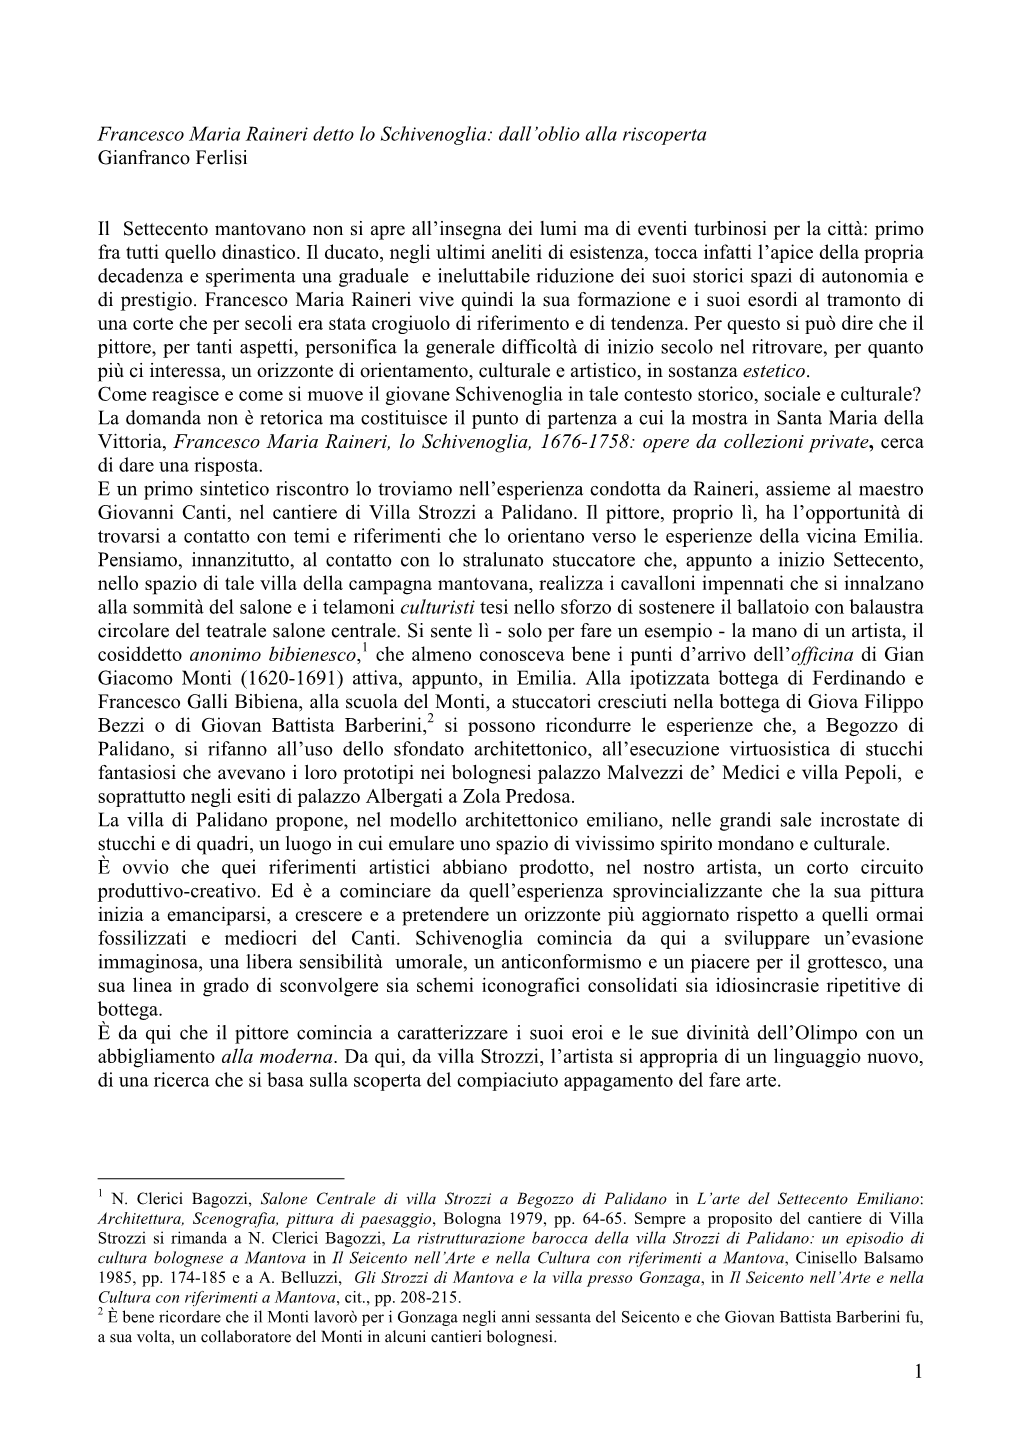 1 Francesco Maria Raineri Detto Lo Schivenoglia